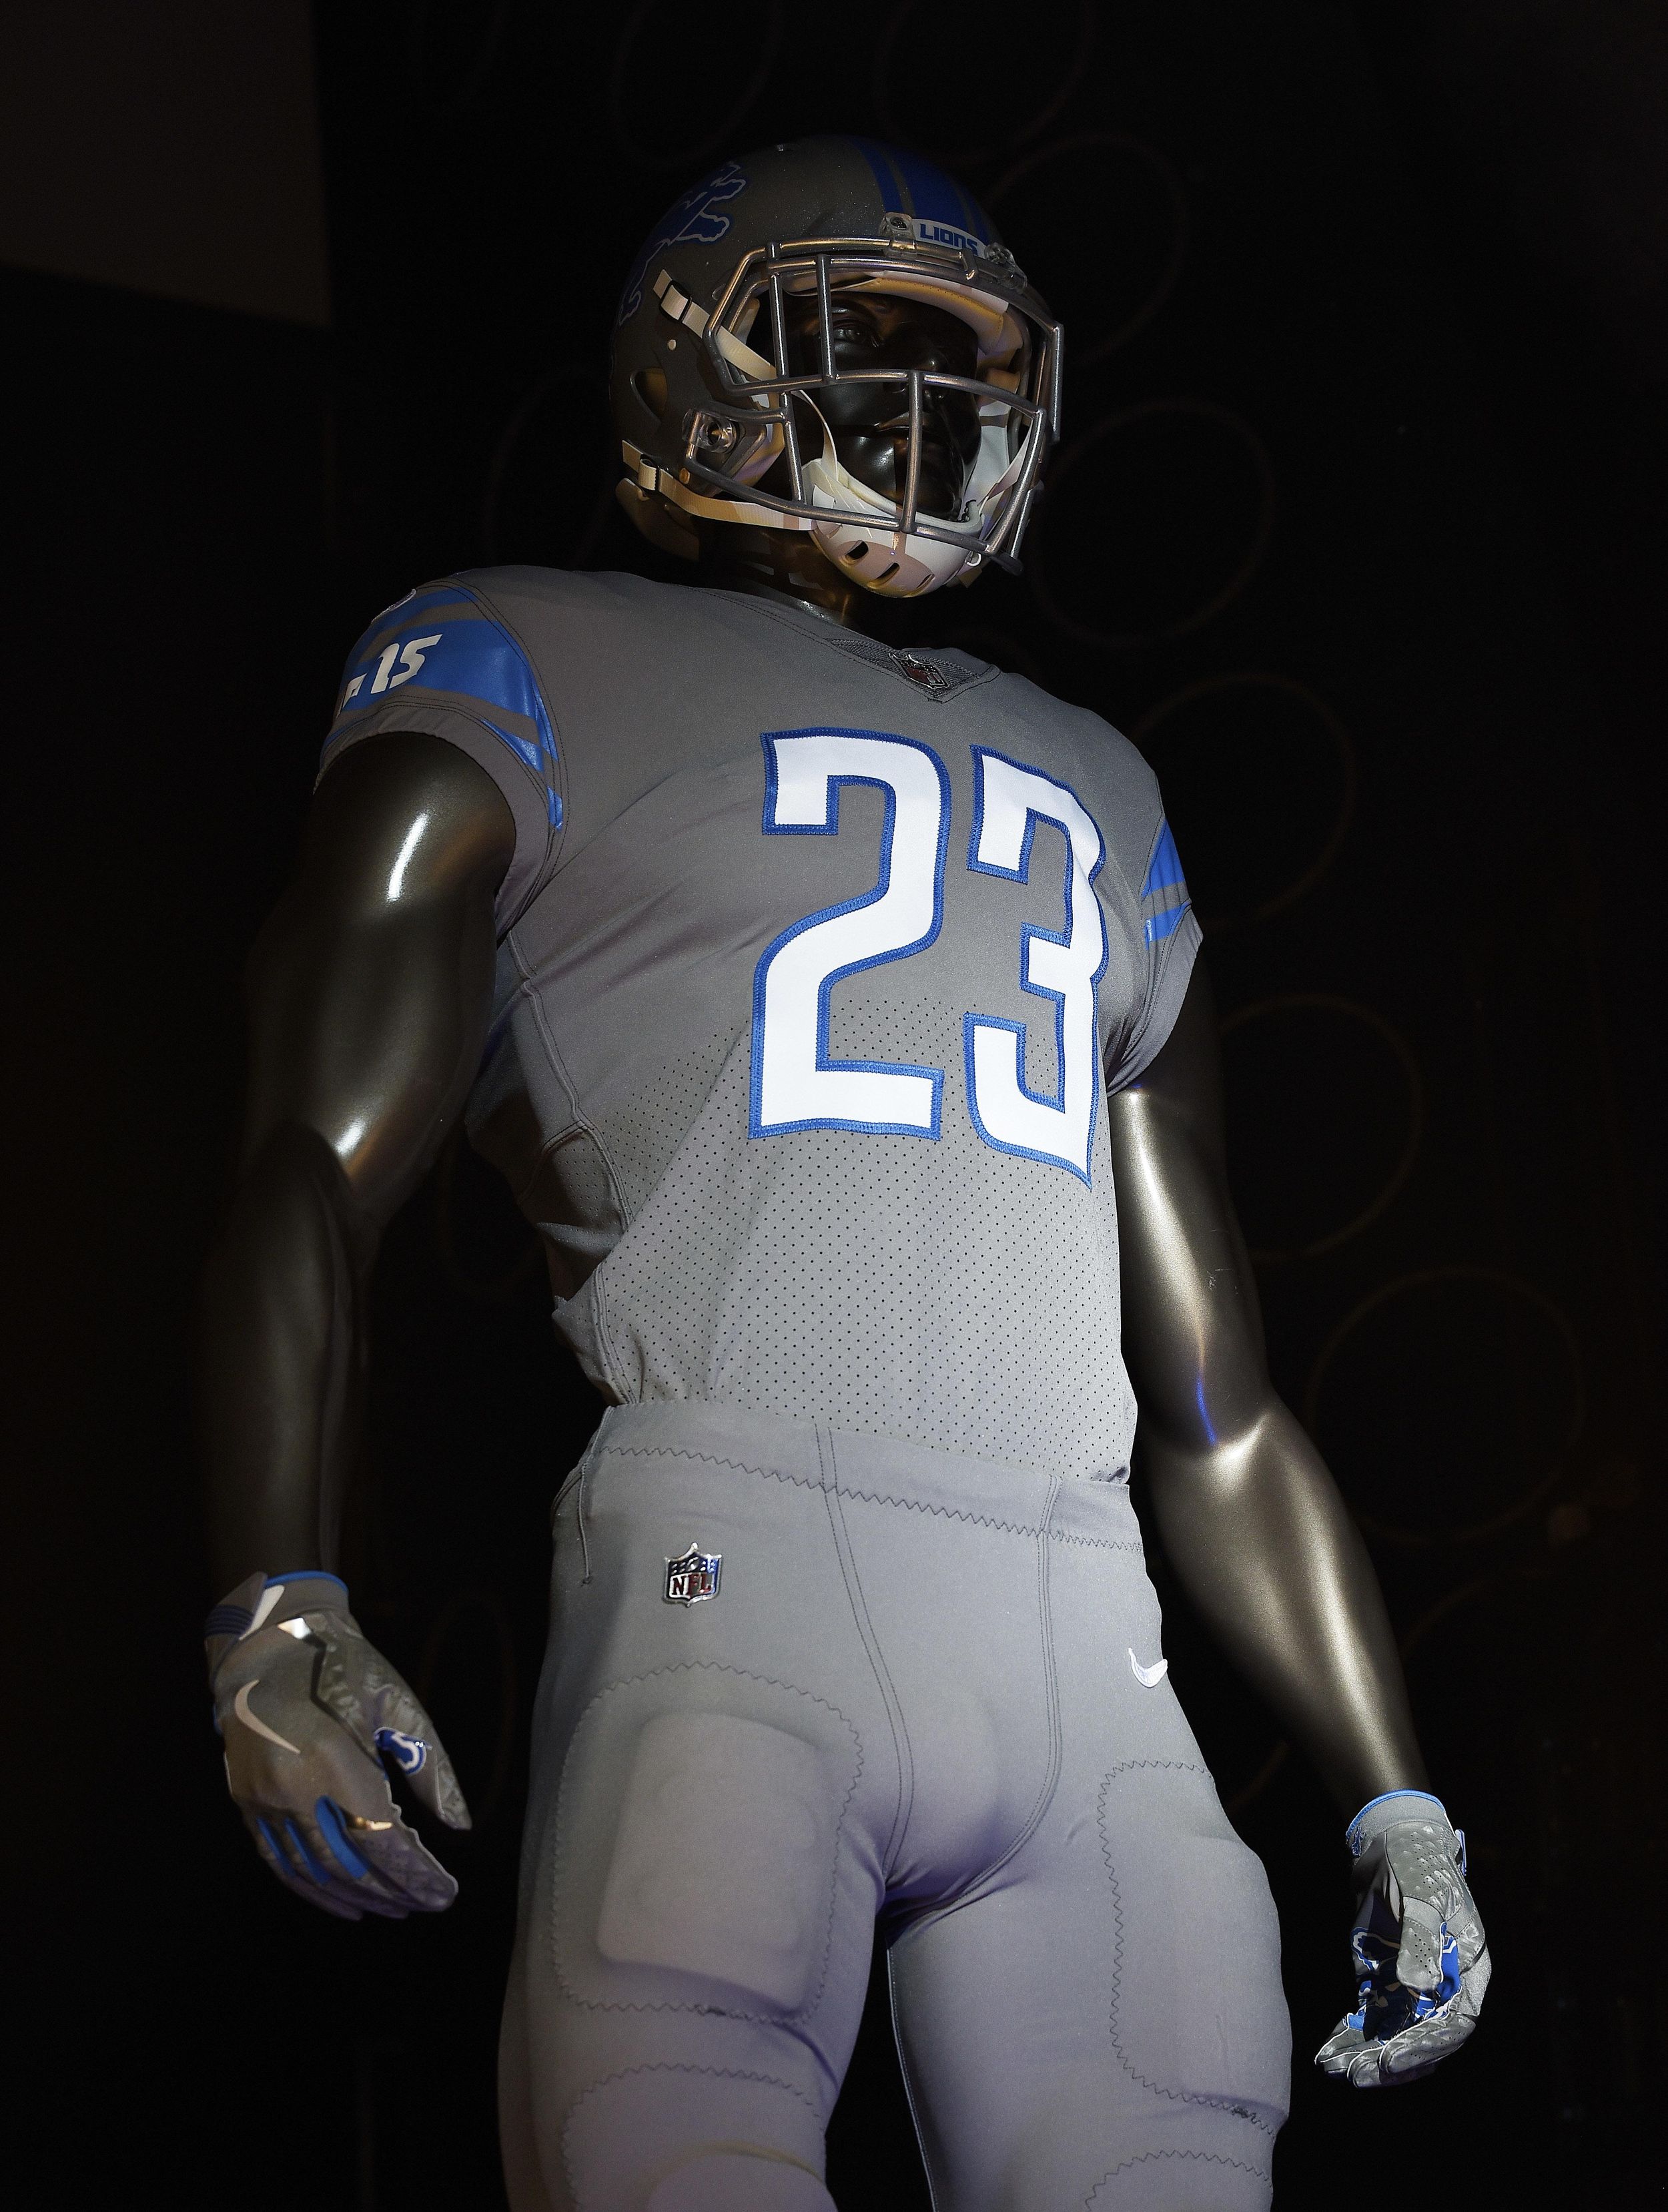 Detroit Lions unveil new-look uniforms